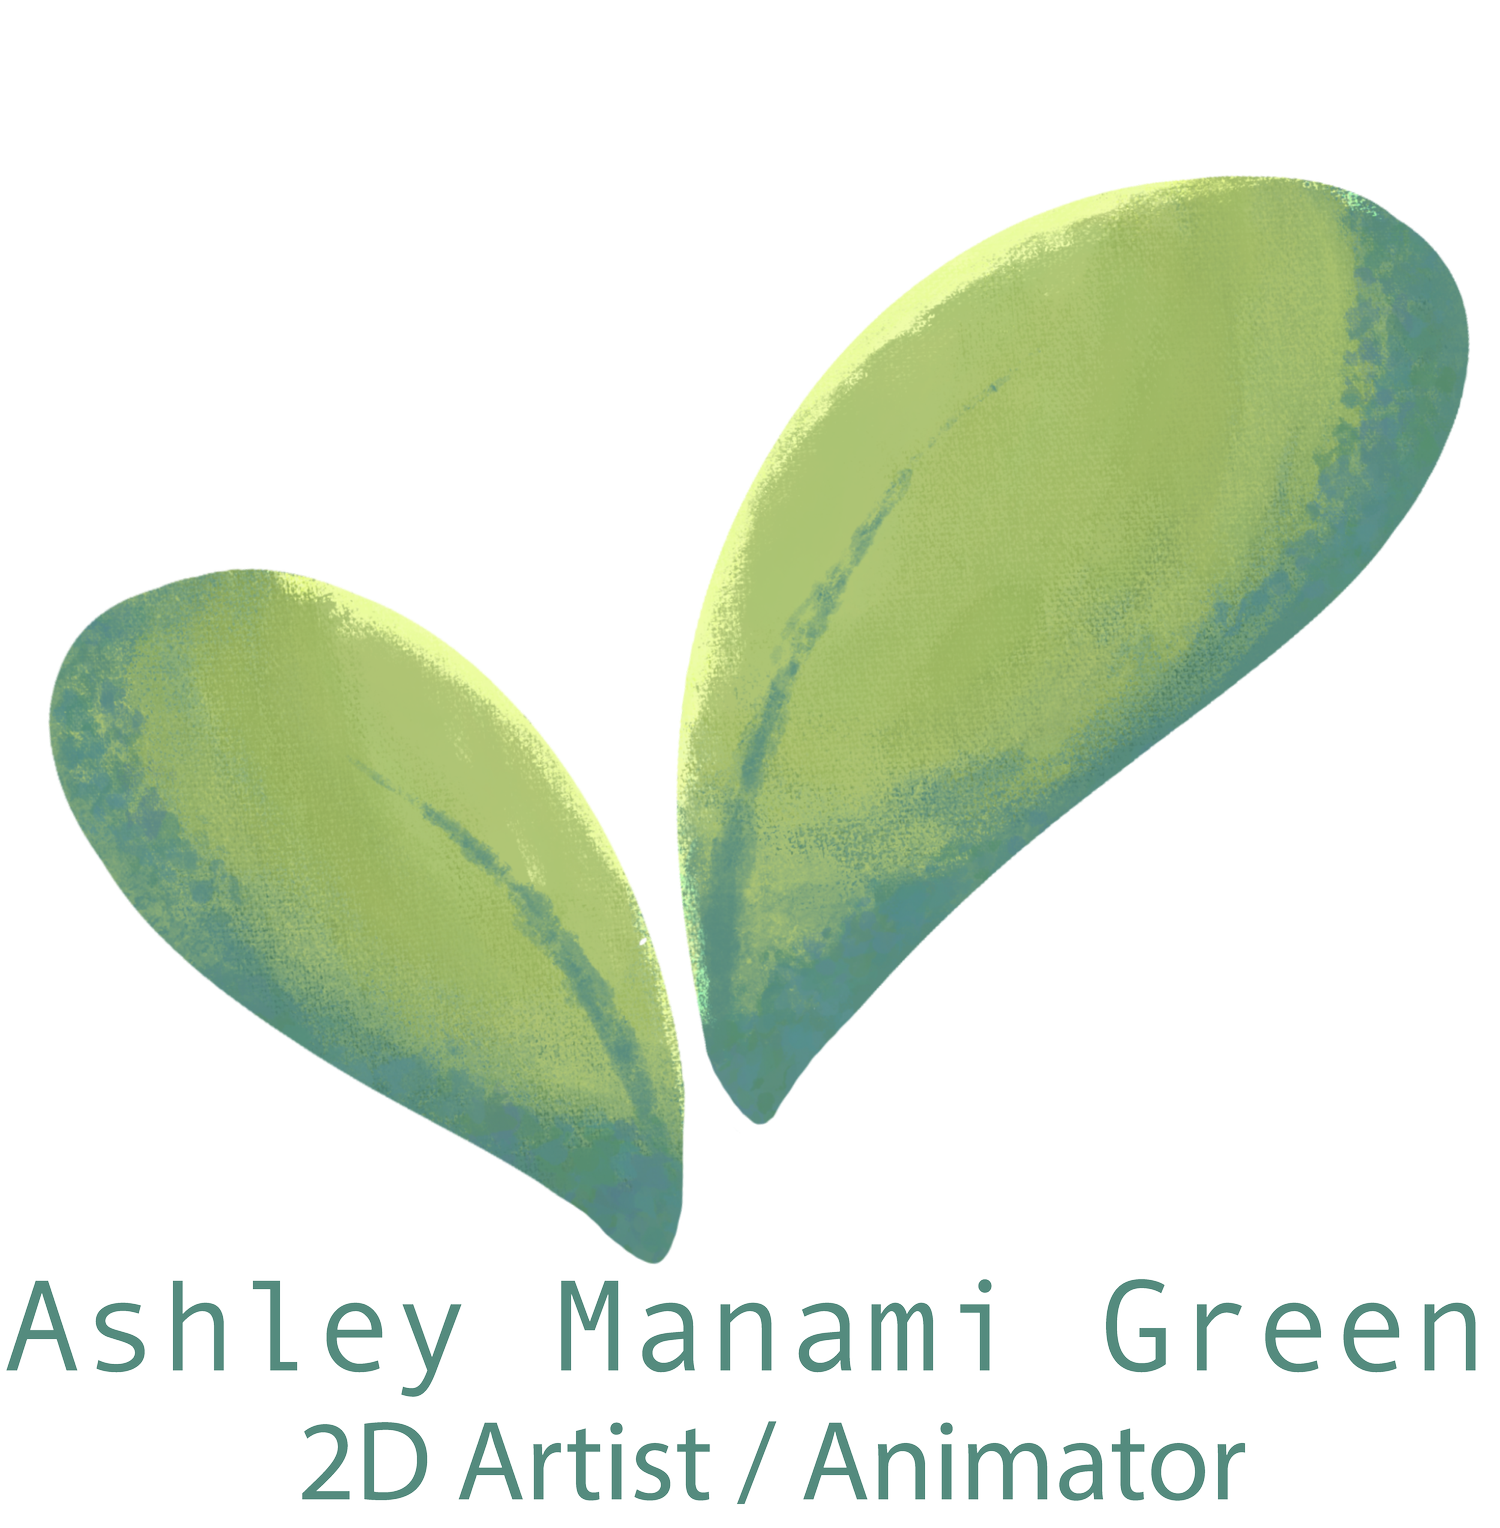 Ashley Manami Green